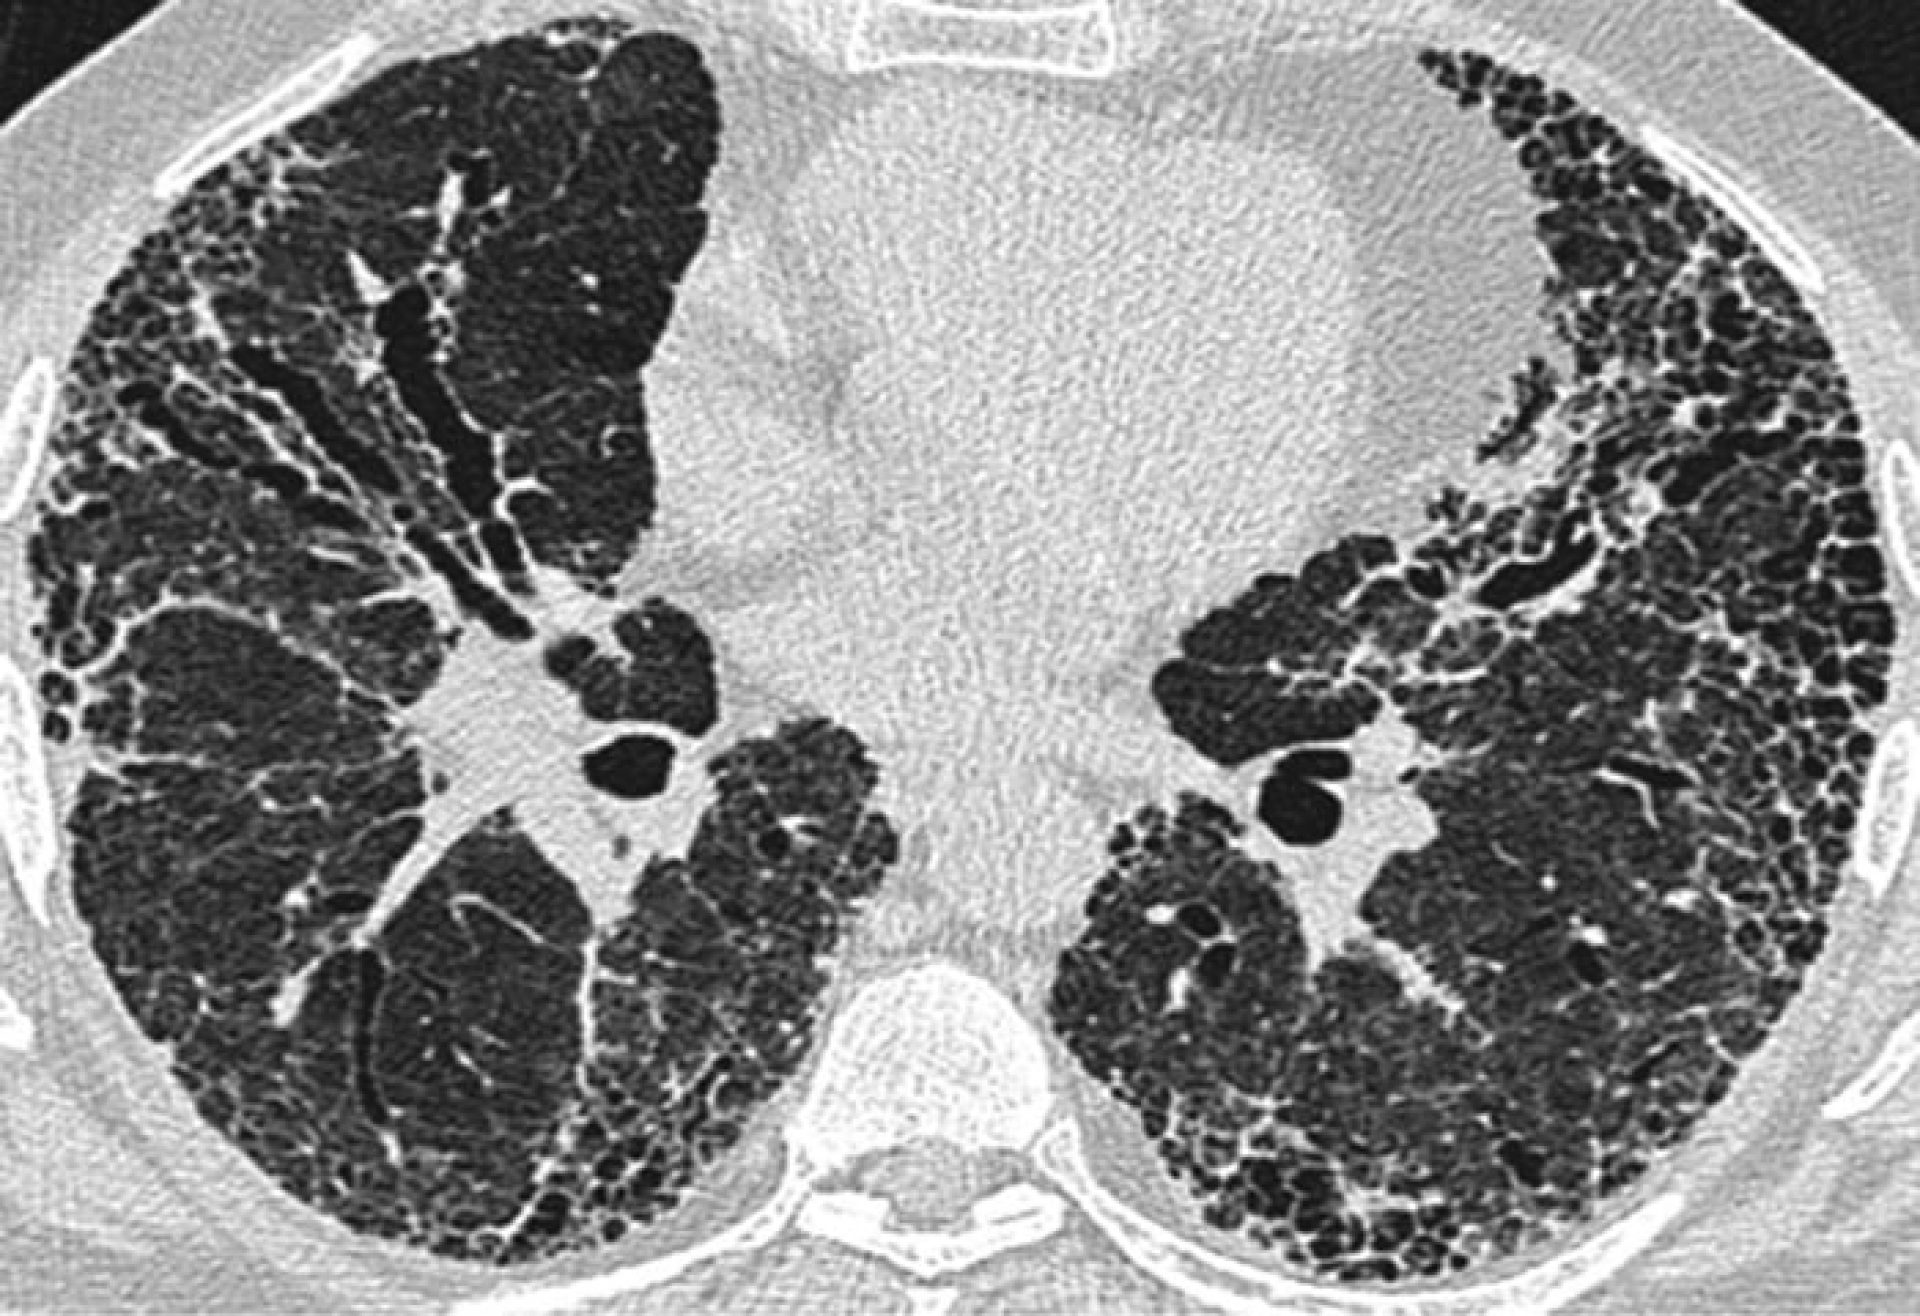 Ra Pulmonary Fibrosis CT